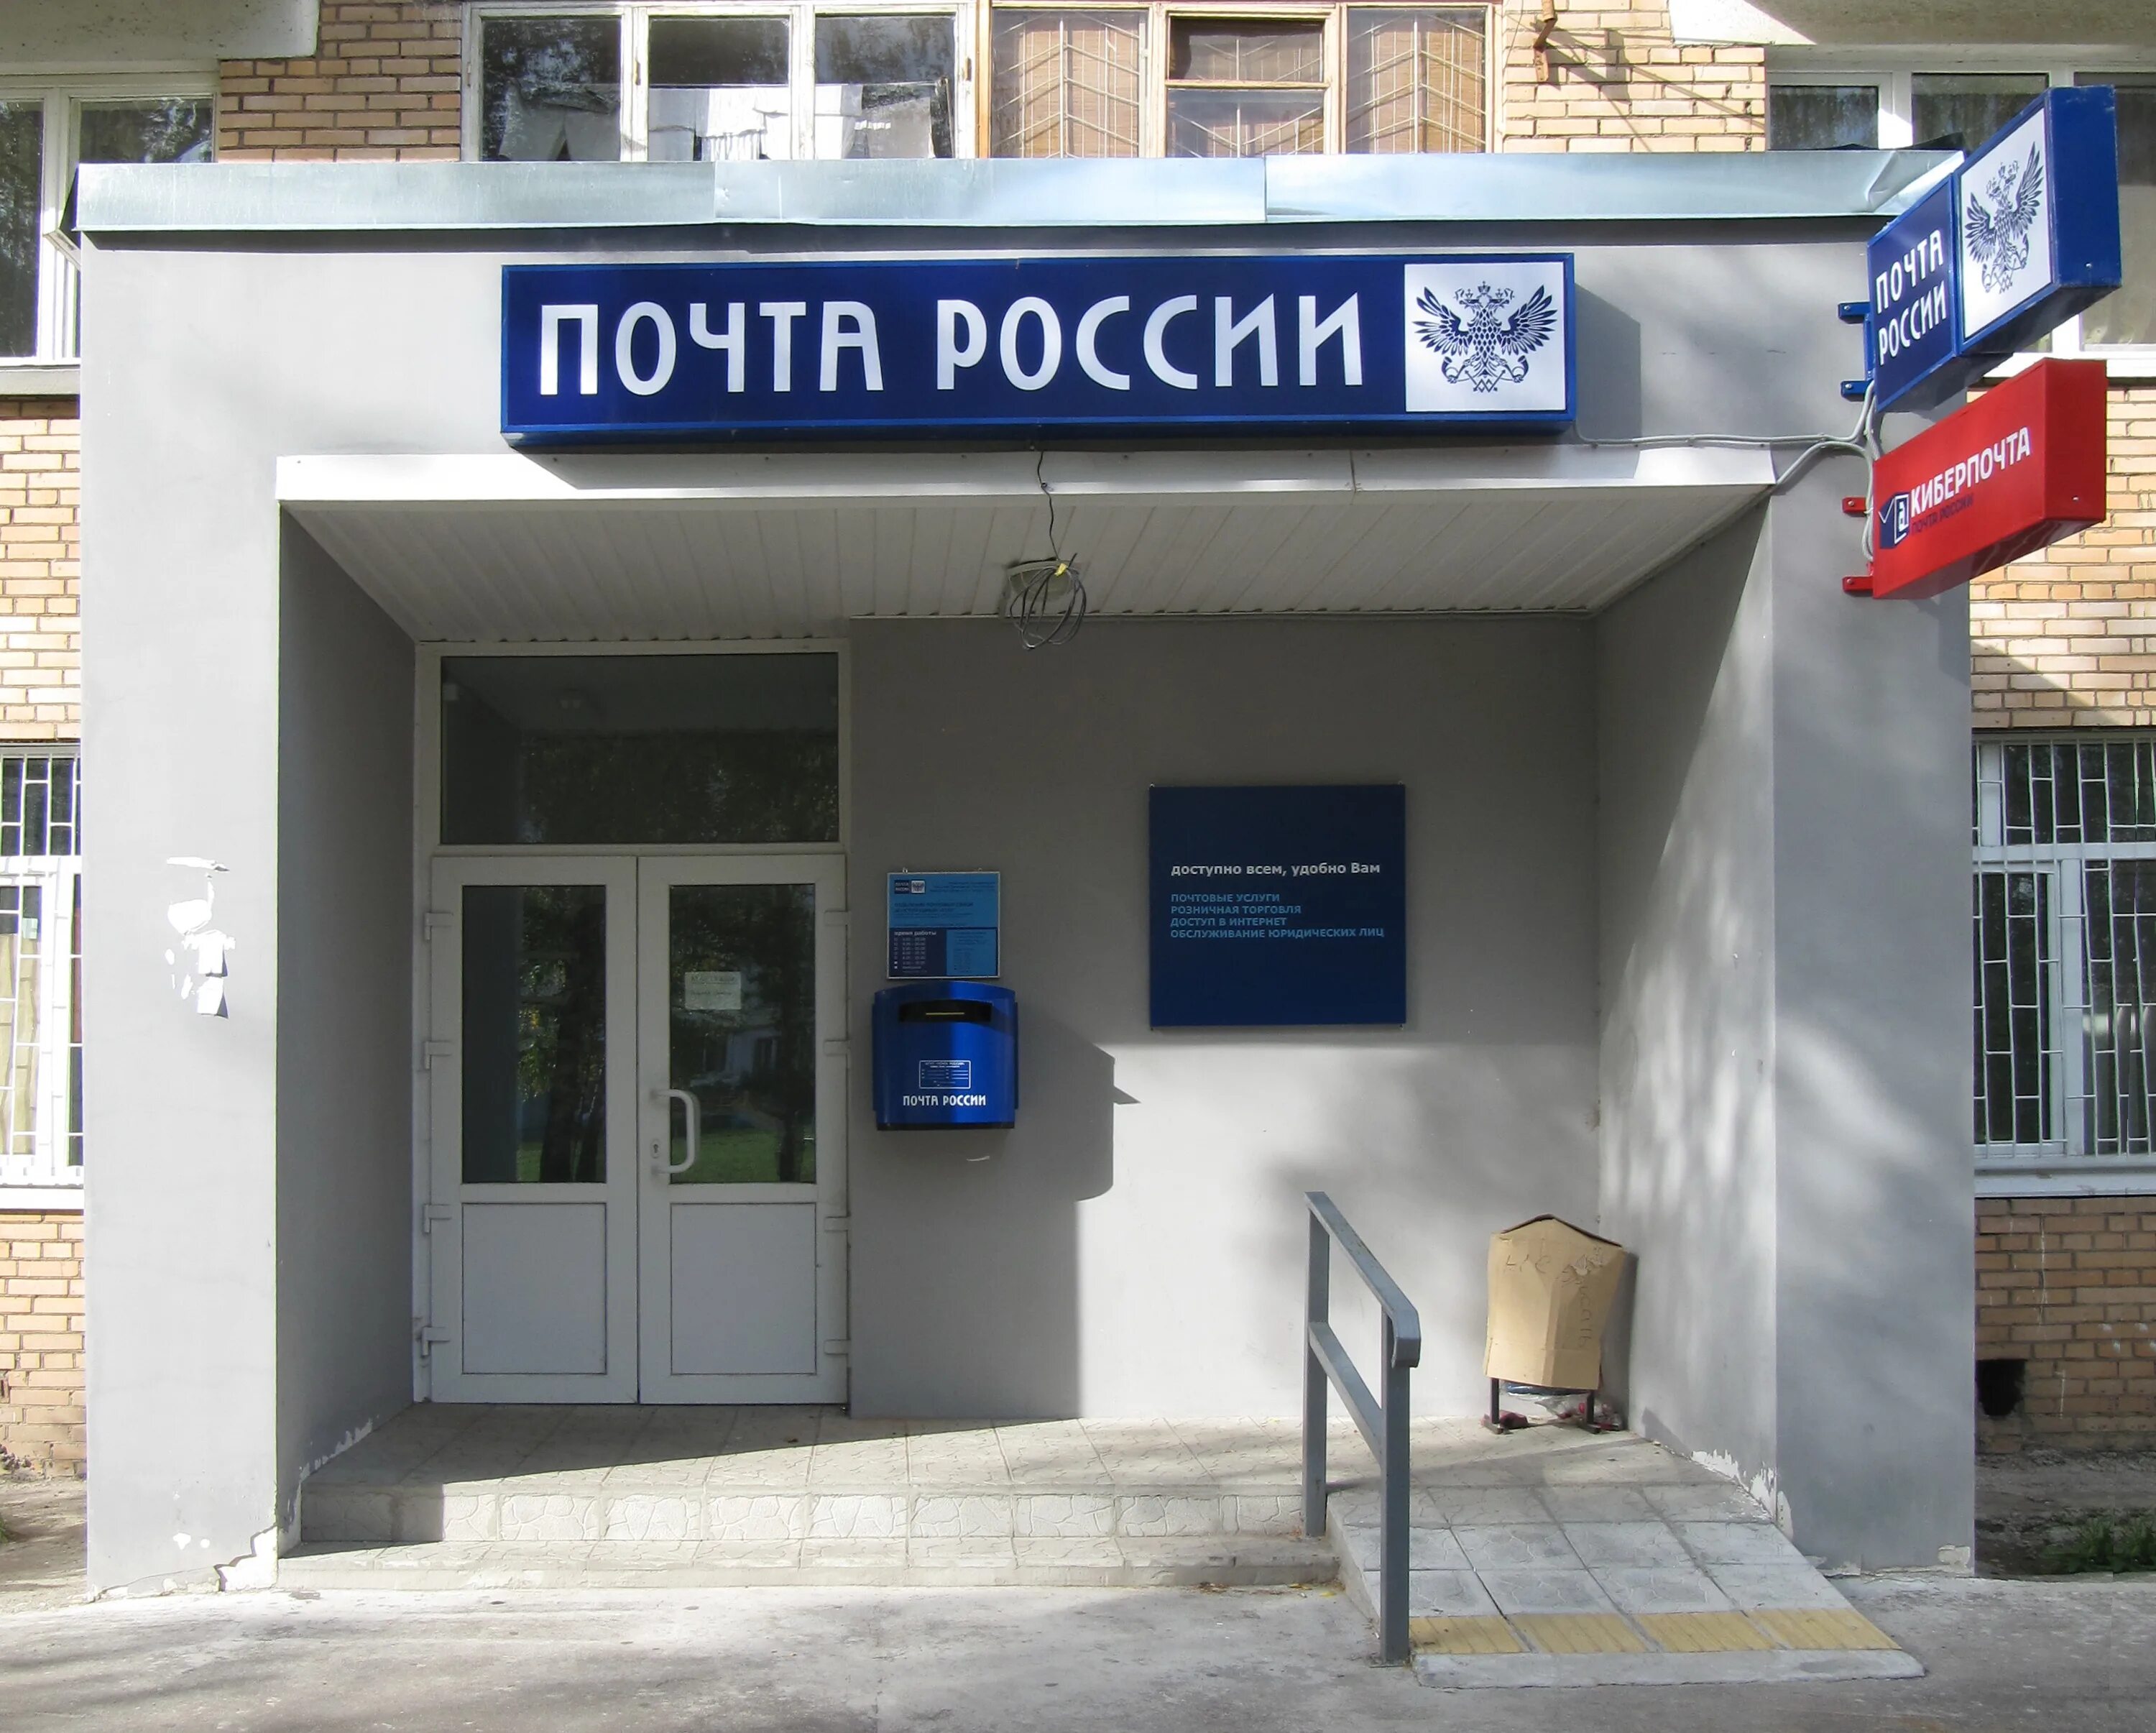 Почтовое отделение спортивная